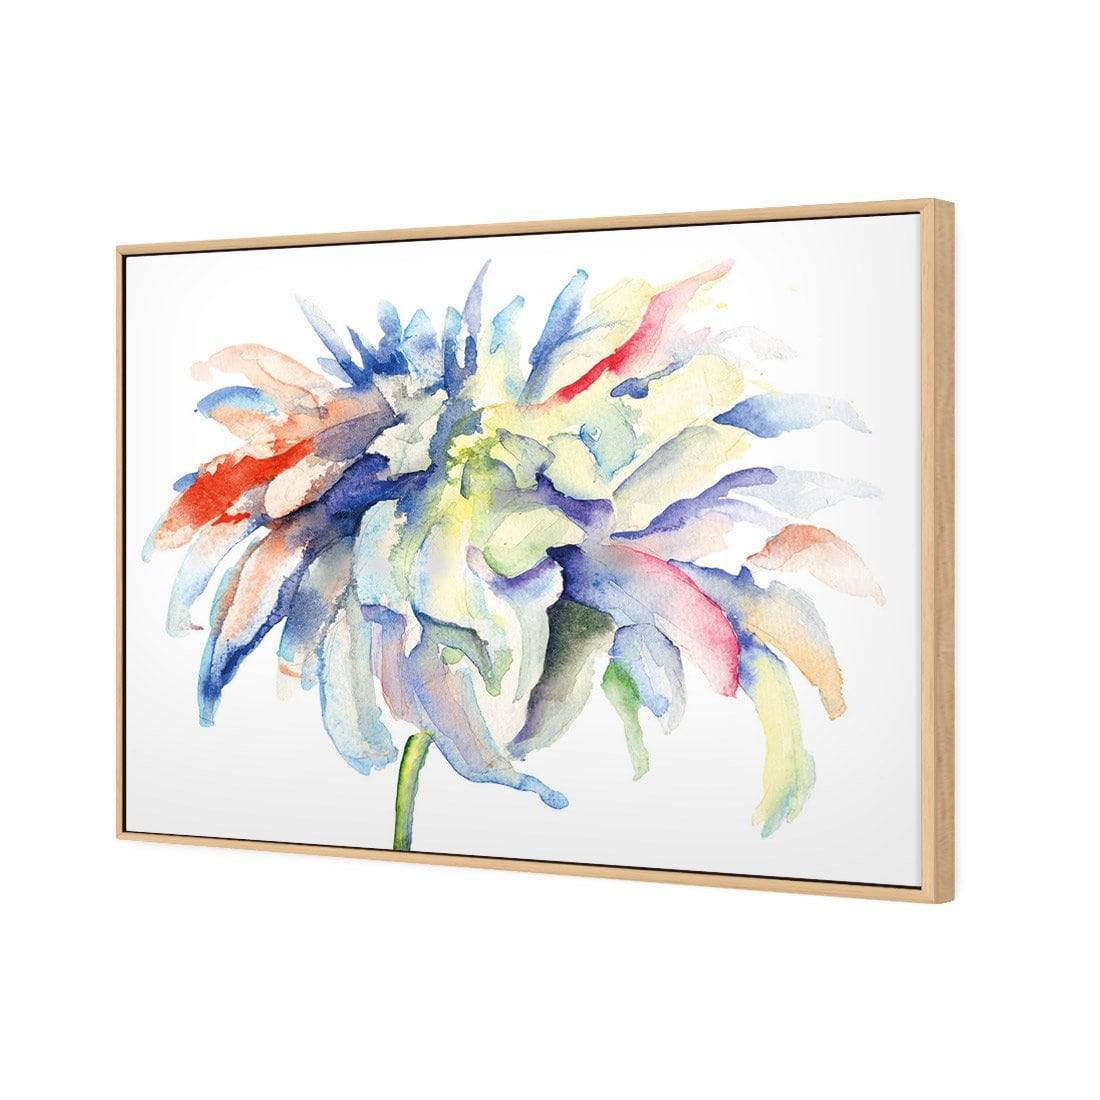 Fairy Floss Canvas Art-Canvas-Wall Art Designs-45x30cm-Canvas - Oak Frame-Wall Art Designs